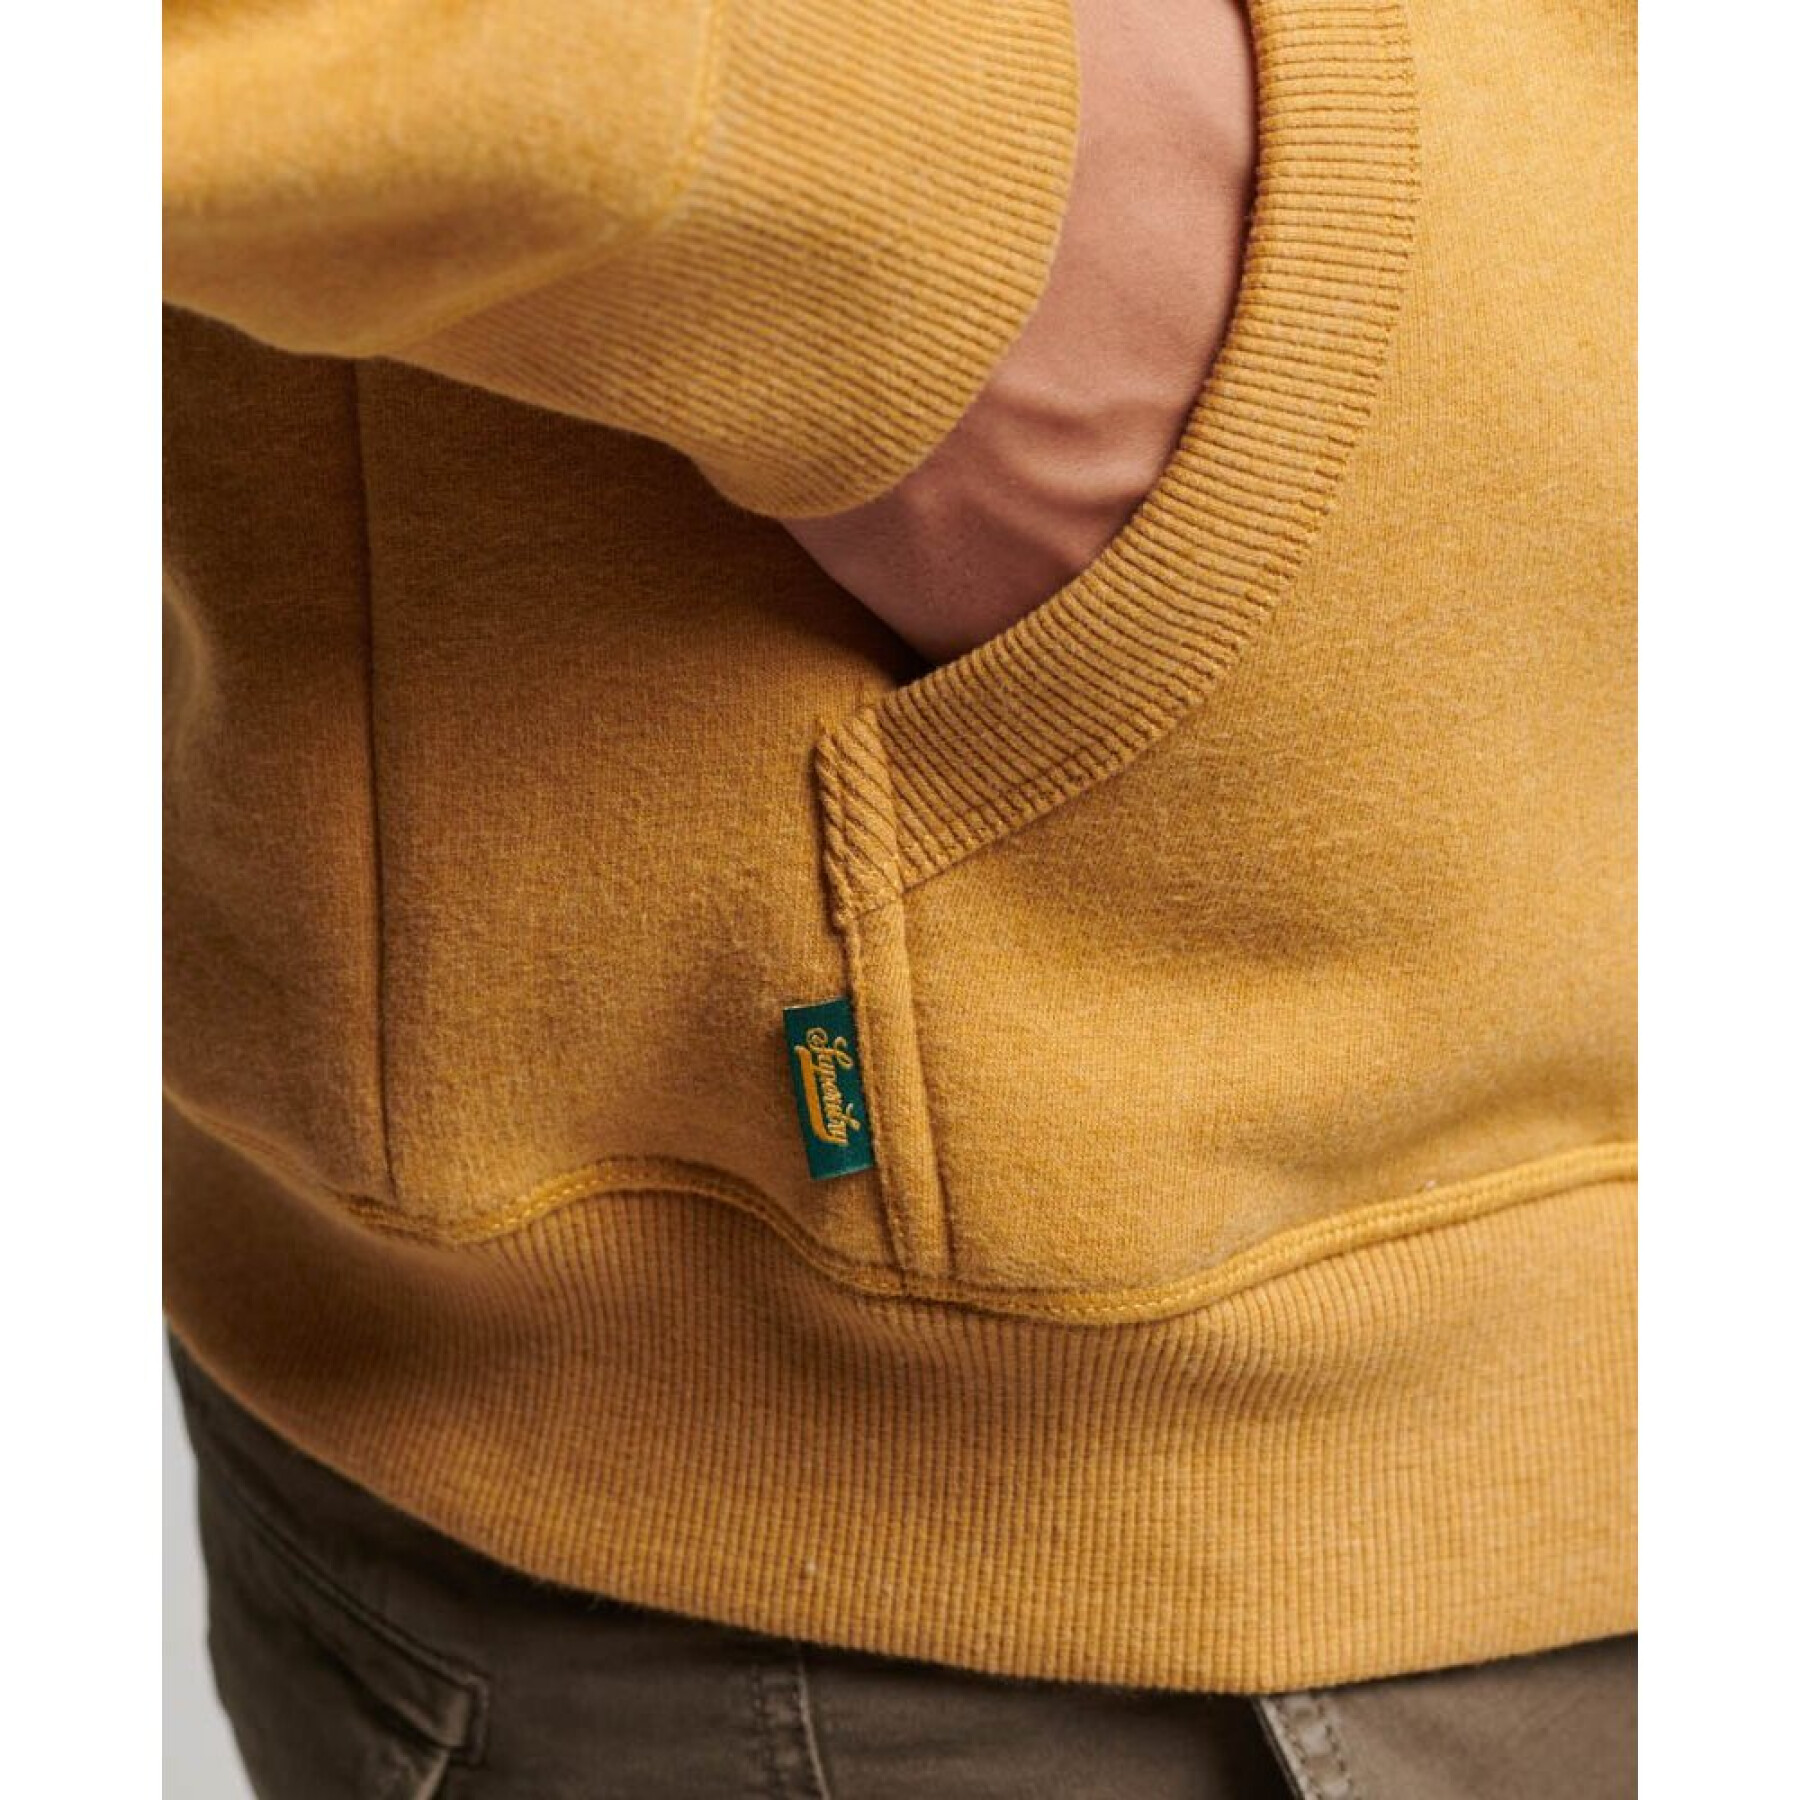 Kapuzen-Sweatshirt mit Reißverschluss und Logo Superdry Essential